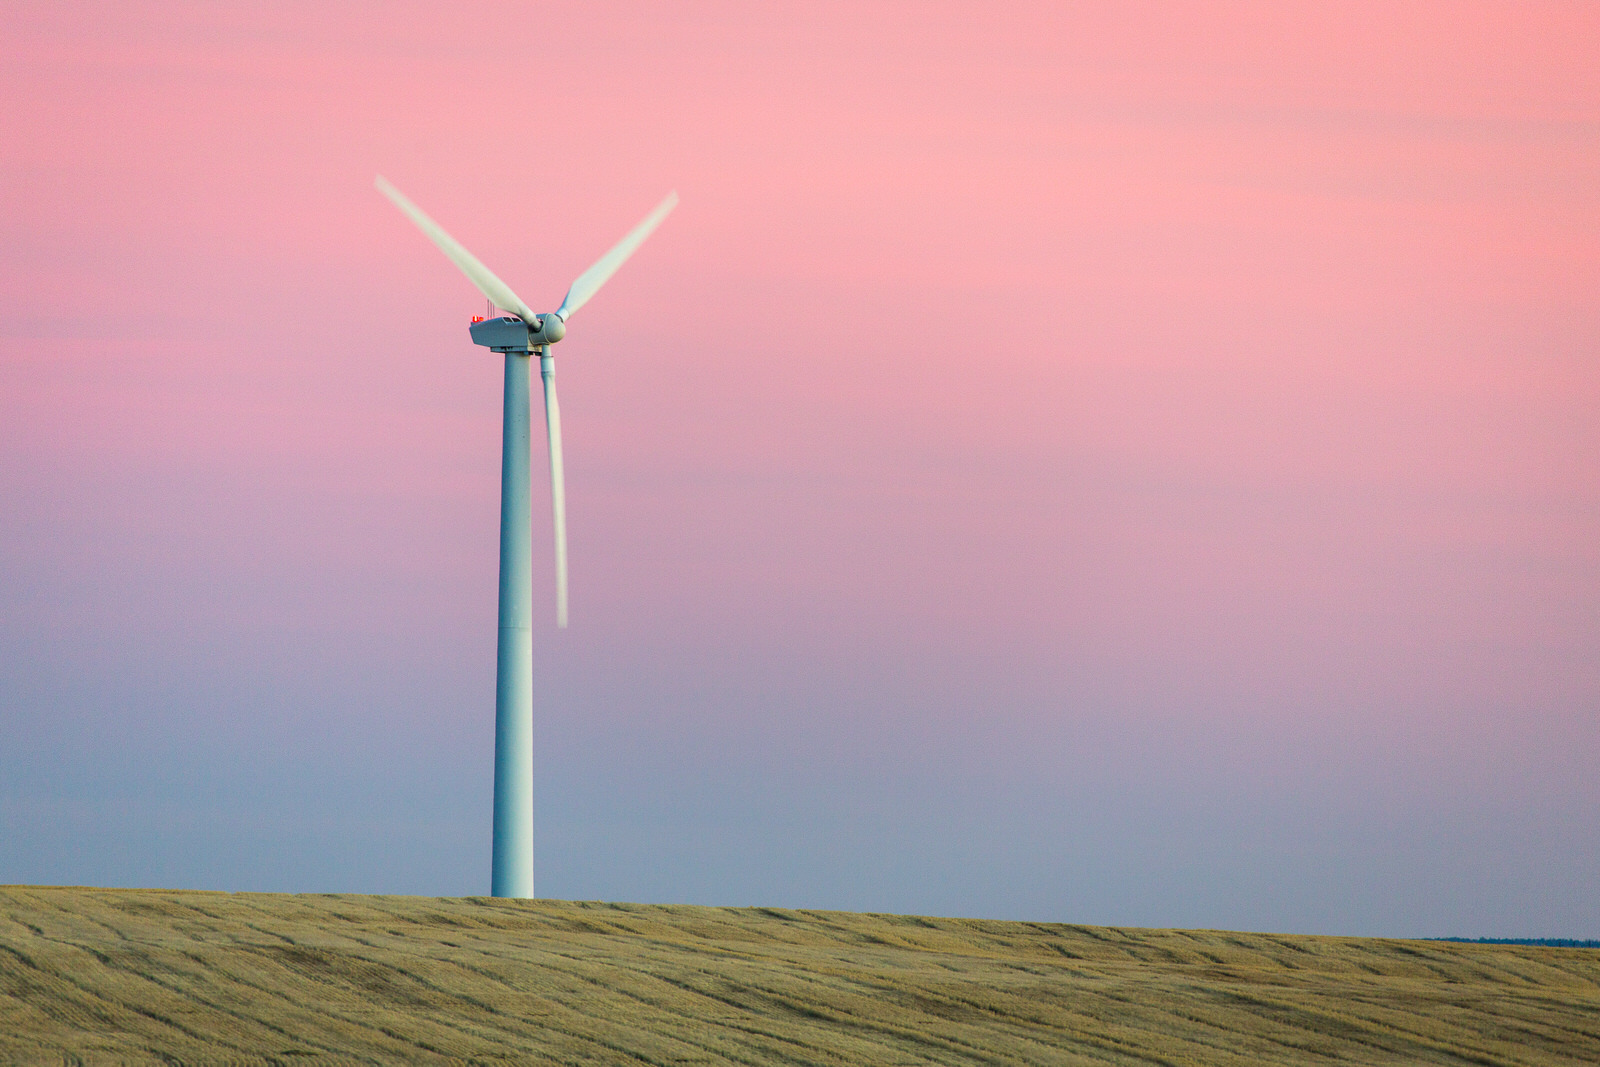  Lone wind turbine in a wheat field at dusk near Wasco, Oregon 